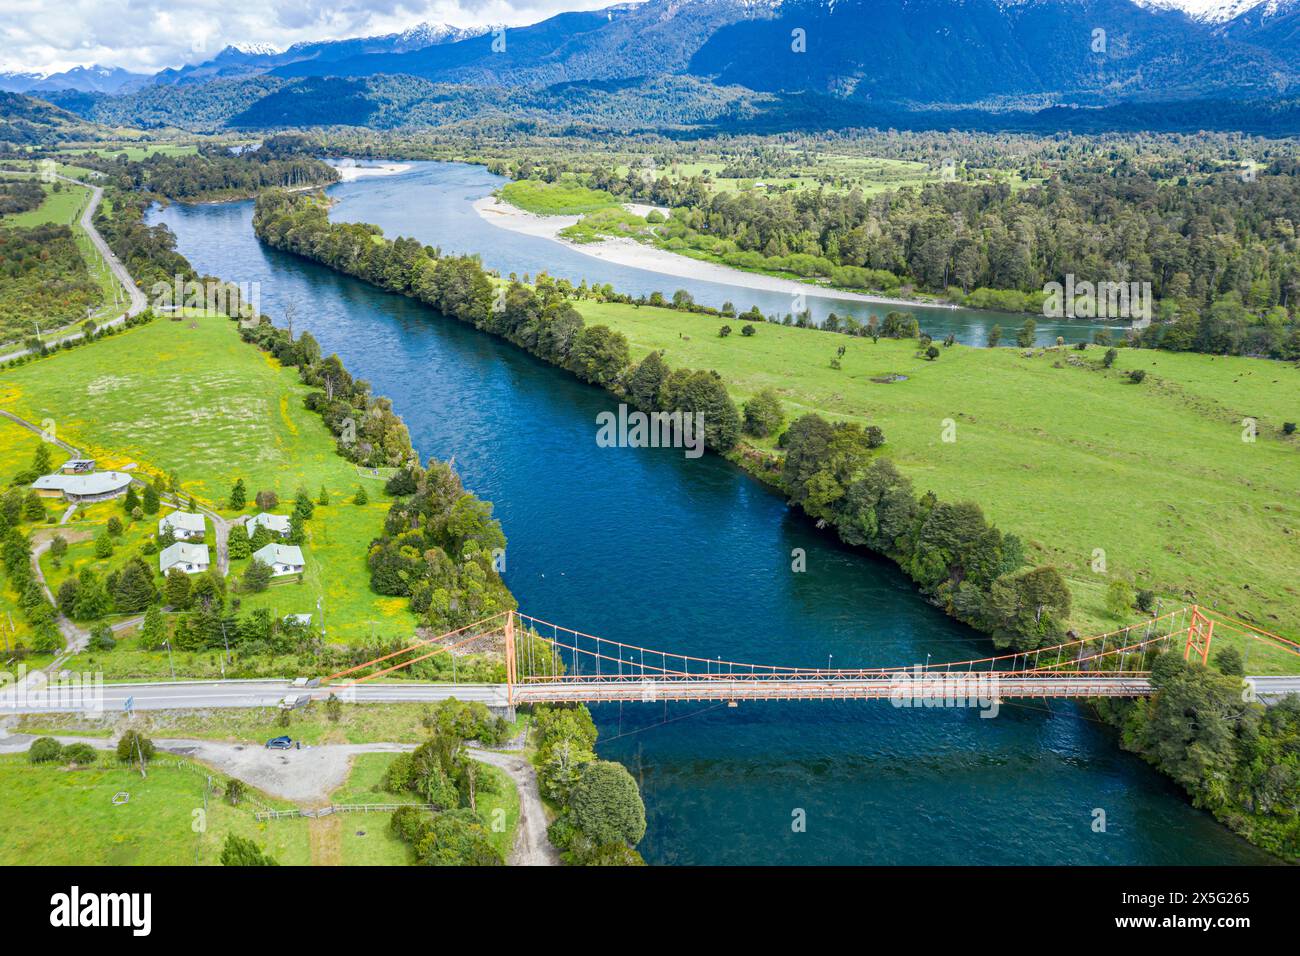 Ponte sul fiume Rio Rosselot, appena a nord del villaggio la Junta, vista aerea, Patagonia, Cile Foto Stock